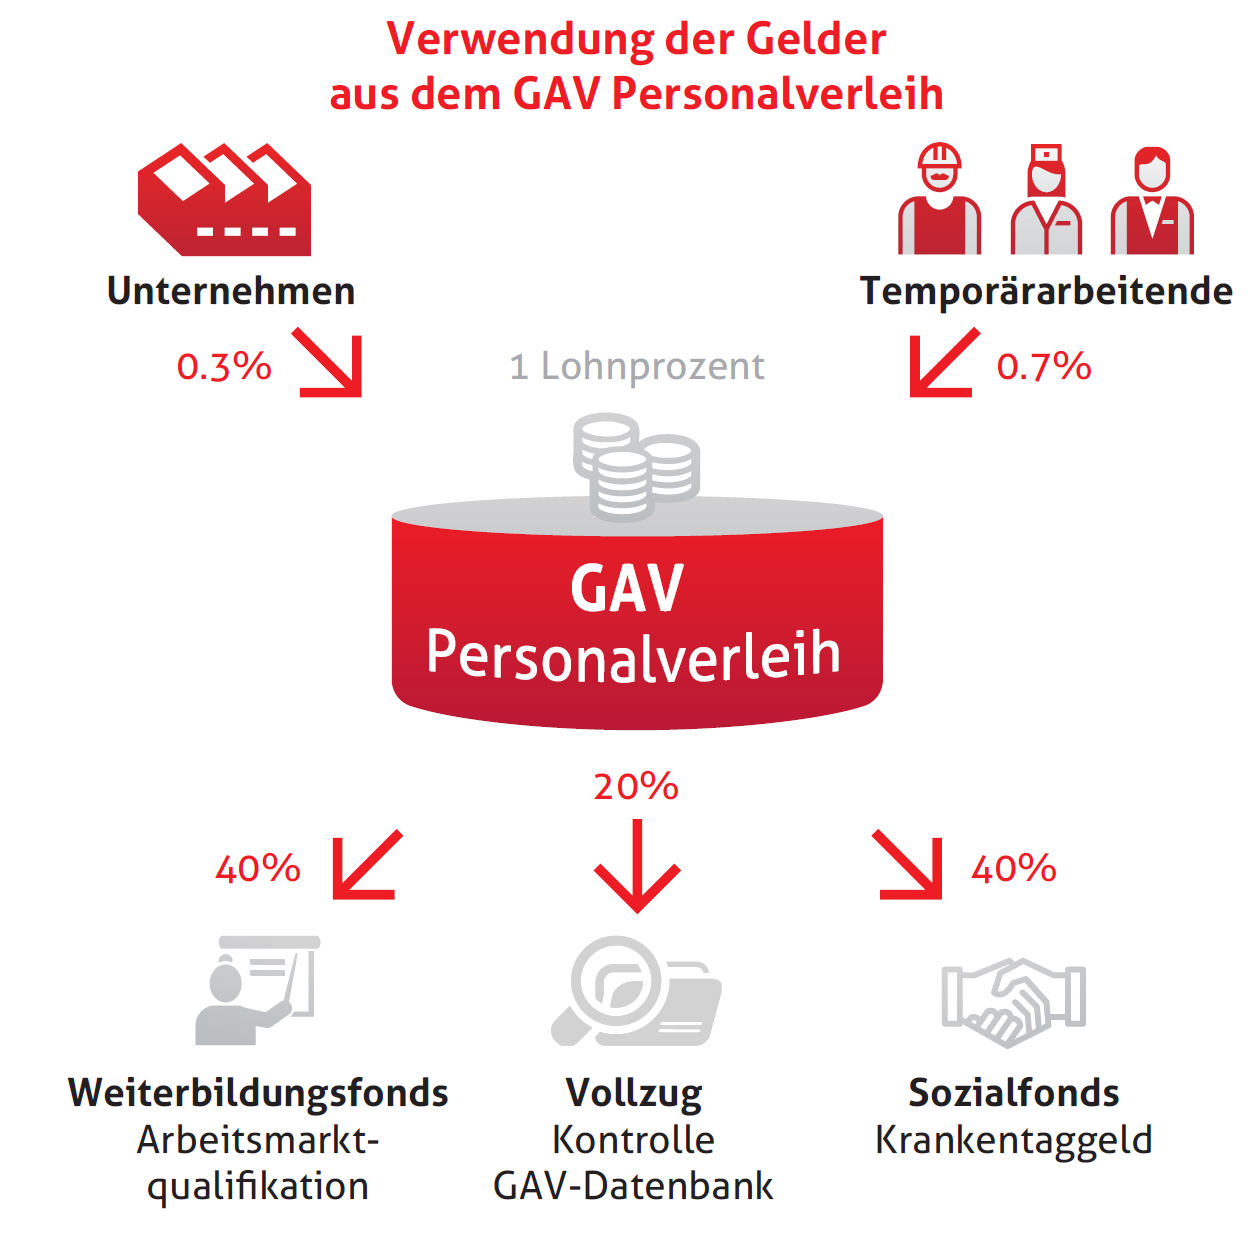 GAV Personalverleih: Bundesrat verlängert die Allgemeinverbindlichkeit